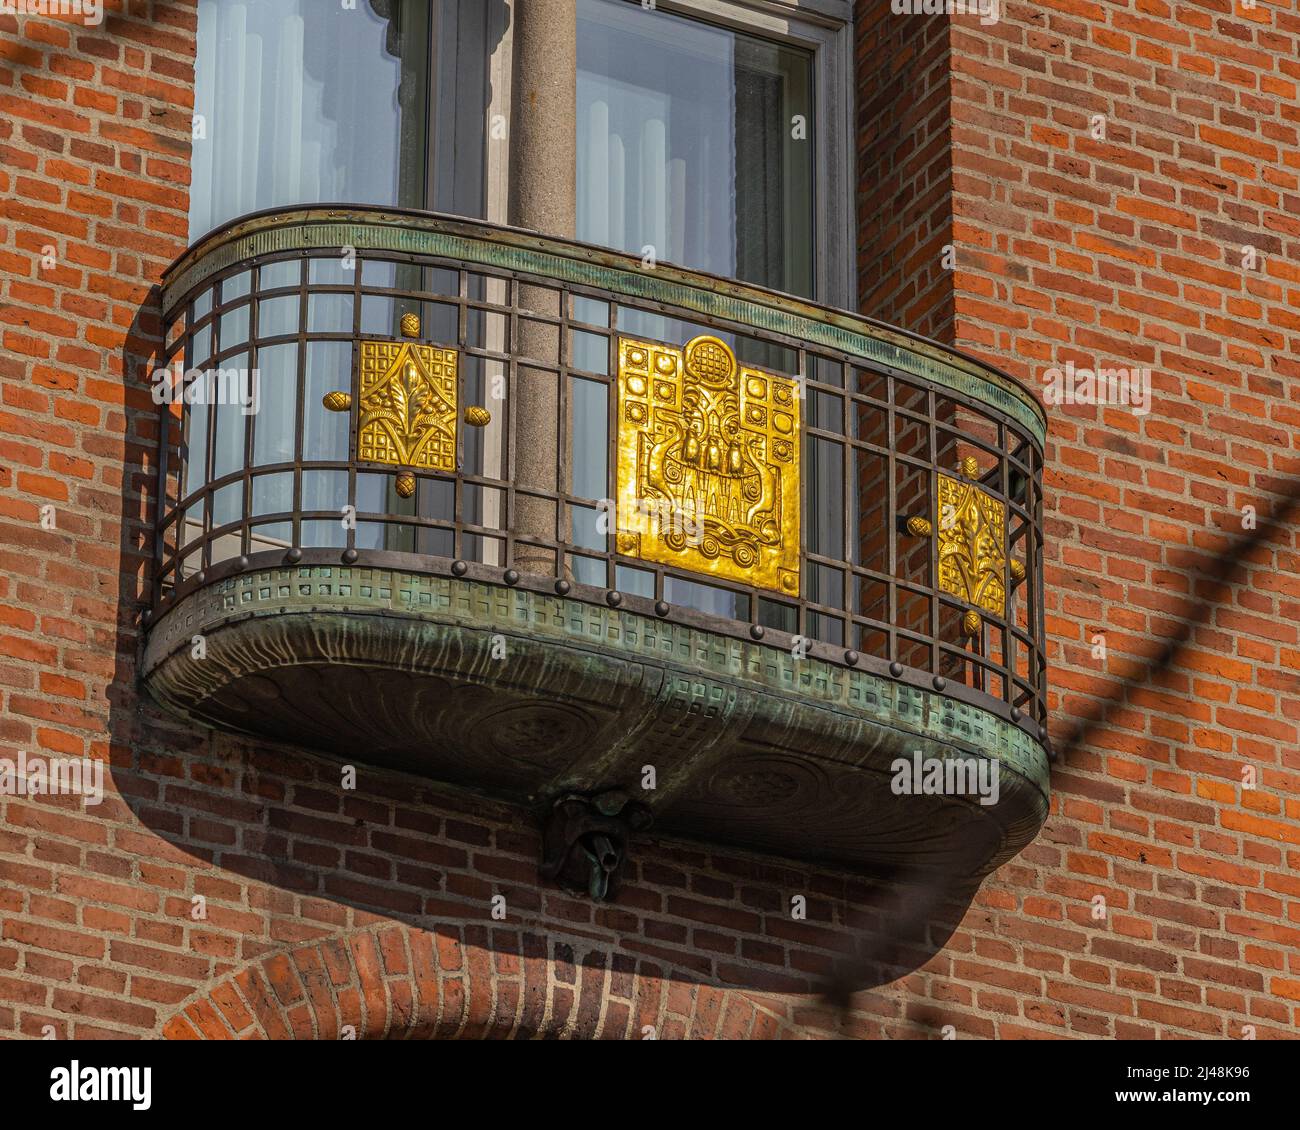 Balcon avec rampes en cuivre et en laiton et décorations dorées de l'hôtel Palace de Copenhague. Copenhague, Danemark, Europe Banque D'Images